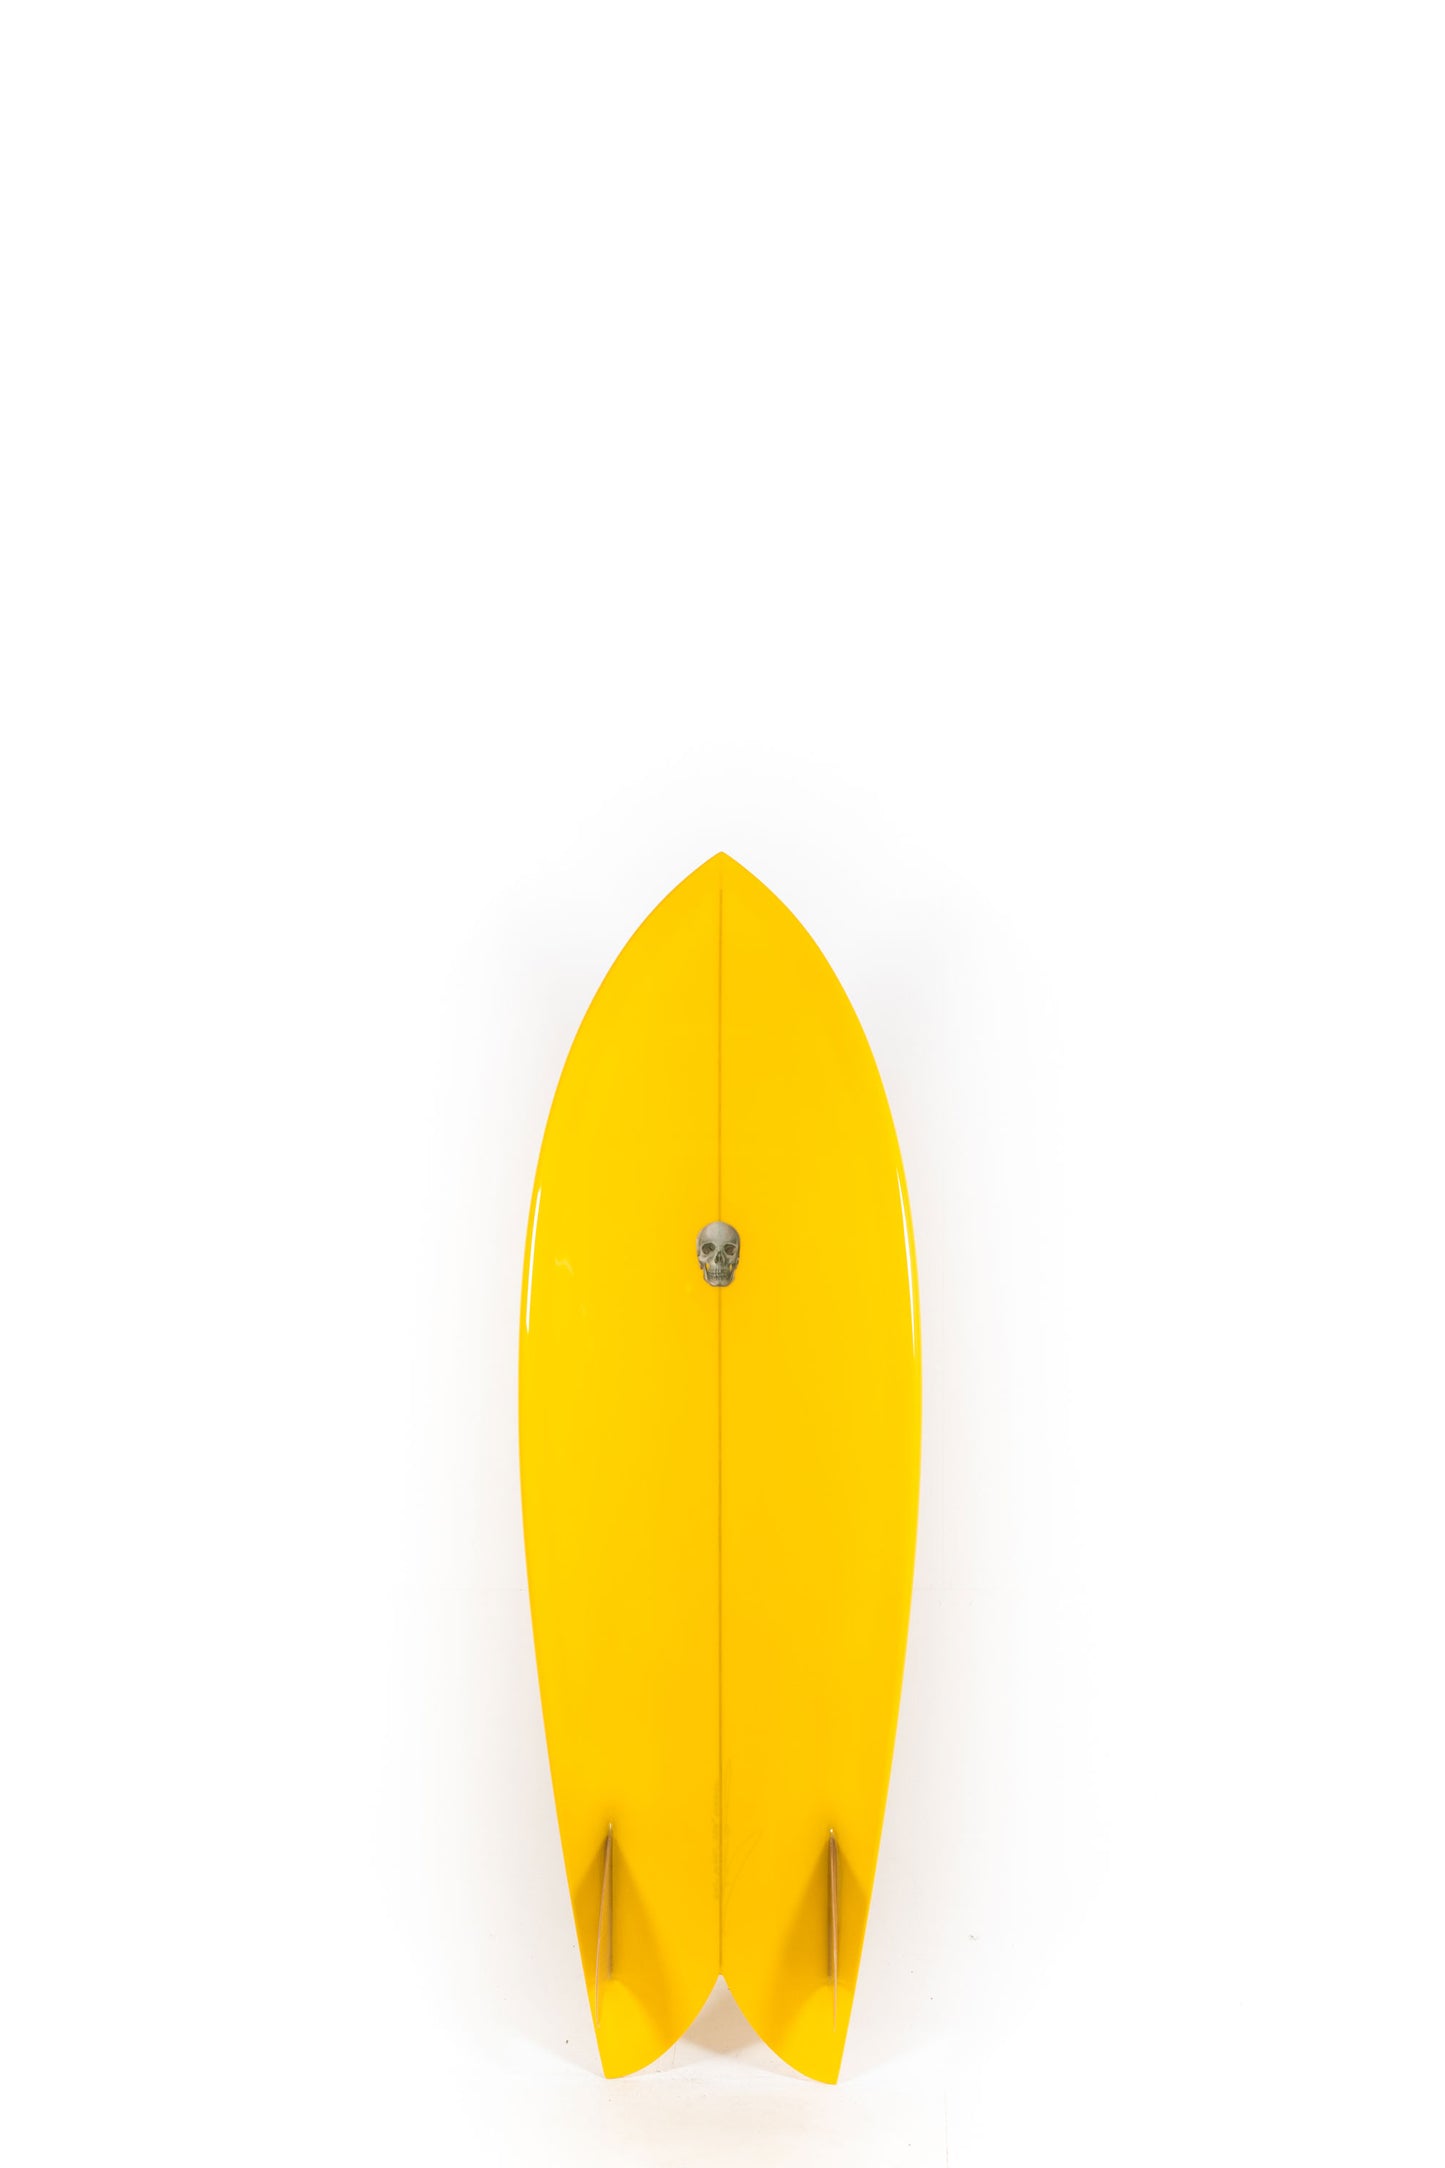 Pukas Surf Shop - Christenson Surfboards - CHRIS FISH - 5'4" x 20 3/4 x 2 3/8 -CX05032